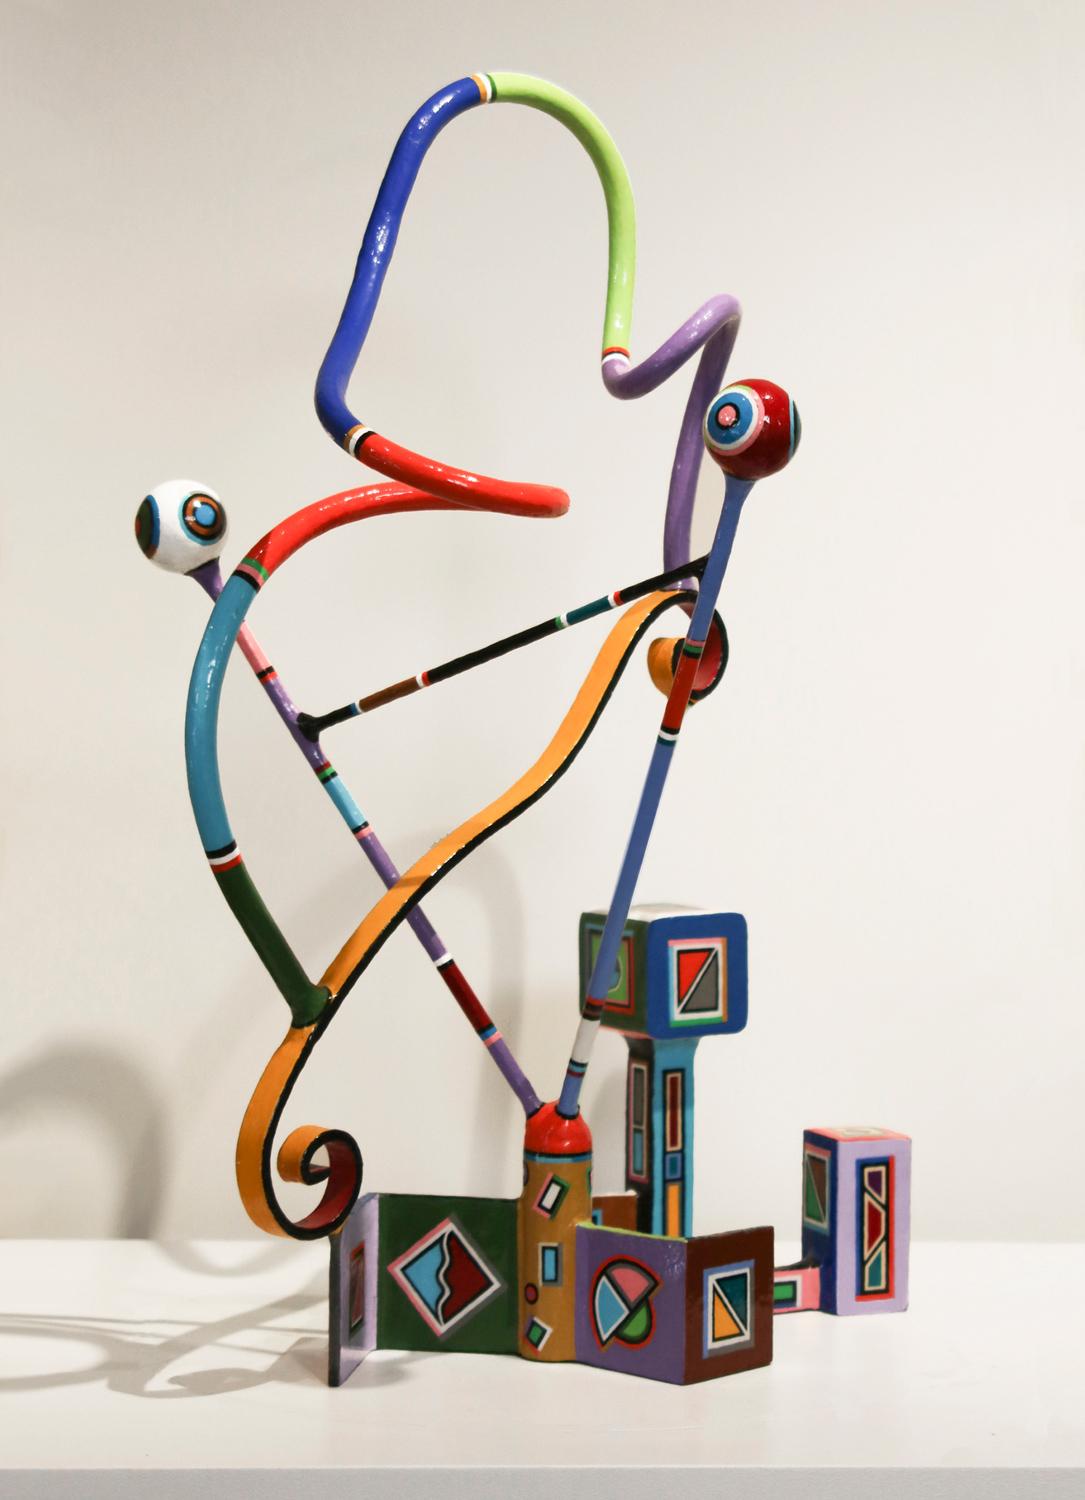 Verspielte und farbenfrohe Stahlsockelskulptur mit Acryllackierung.

Der in Kalifornien lebende Bildhauer Joseph Slusky sagt über seine Arbeit: 